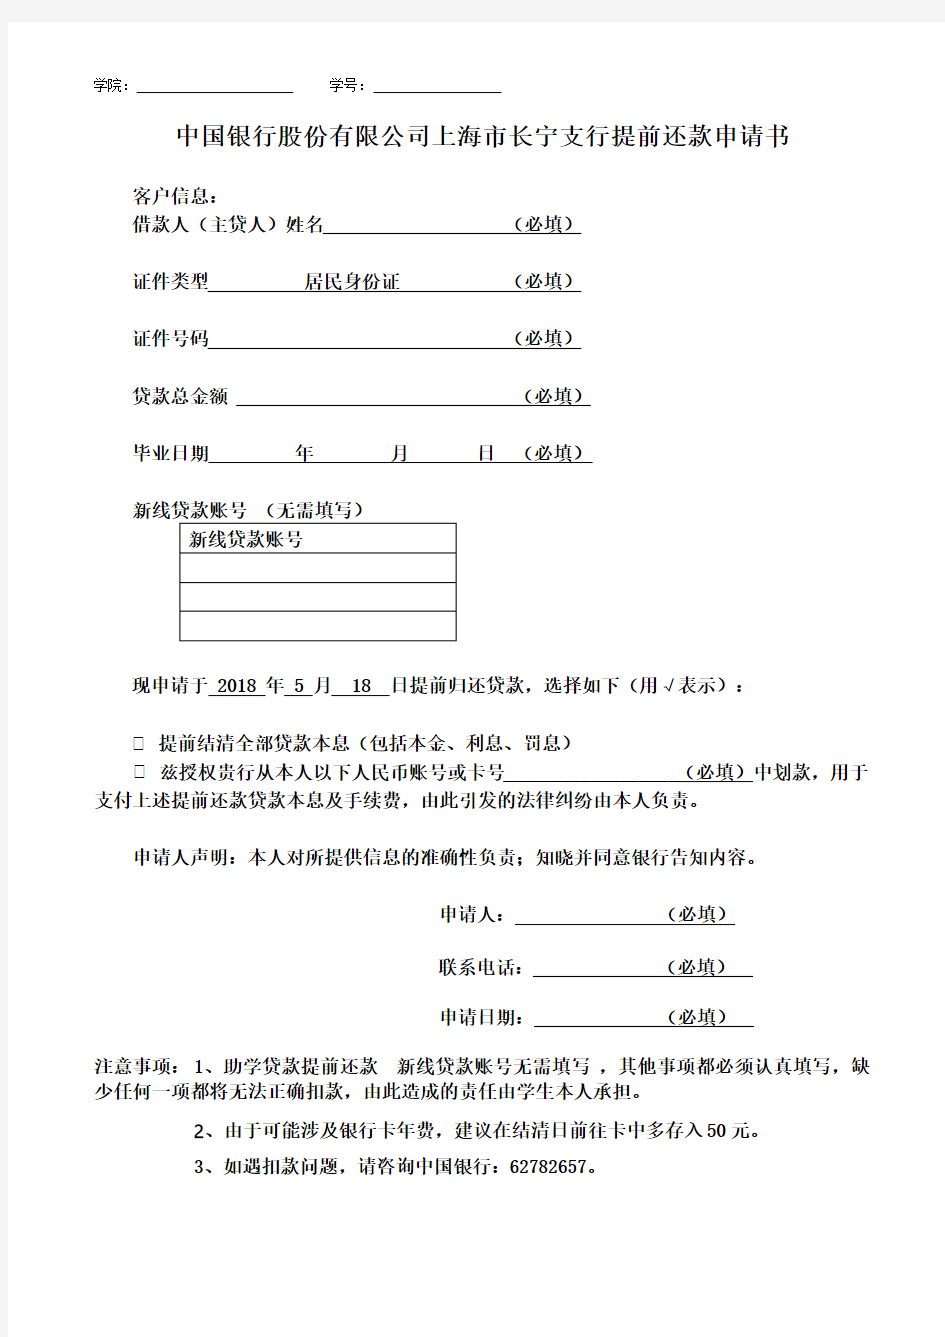 中国银行股份有限公司上海长宁支行提前还款申请书